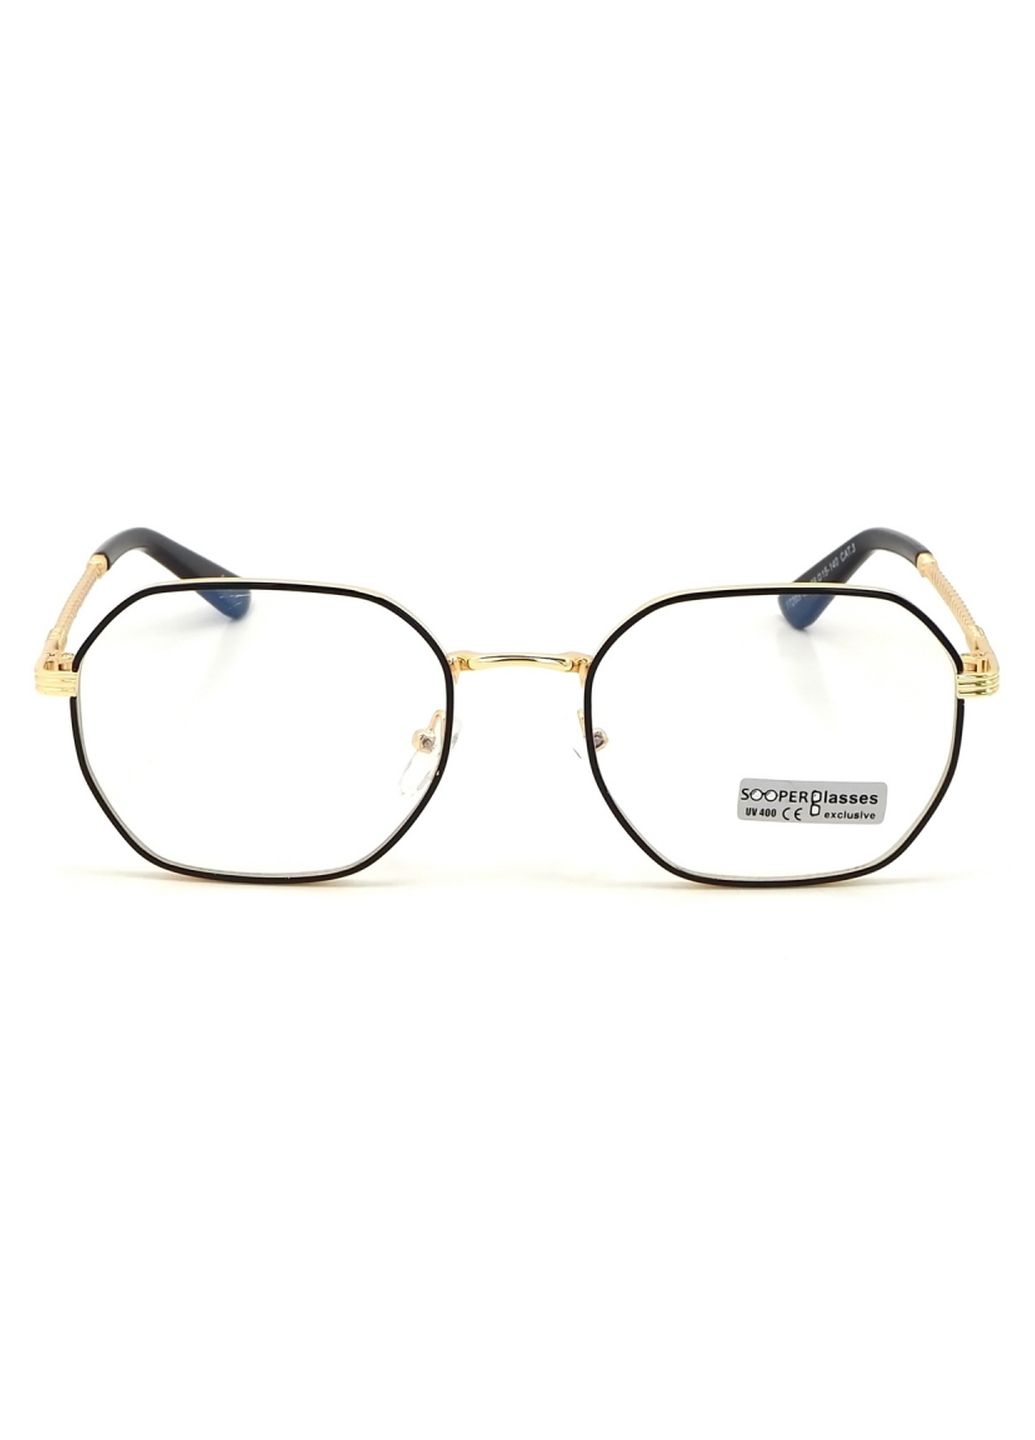 Купить Очки для работы за компьютером Cooper Glasses в золотой оправе 124011 в интернет-магазине